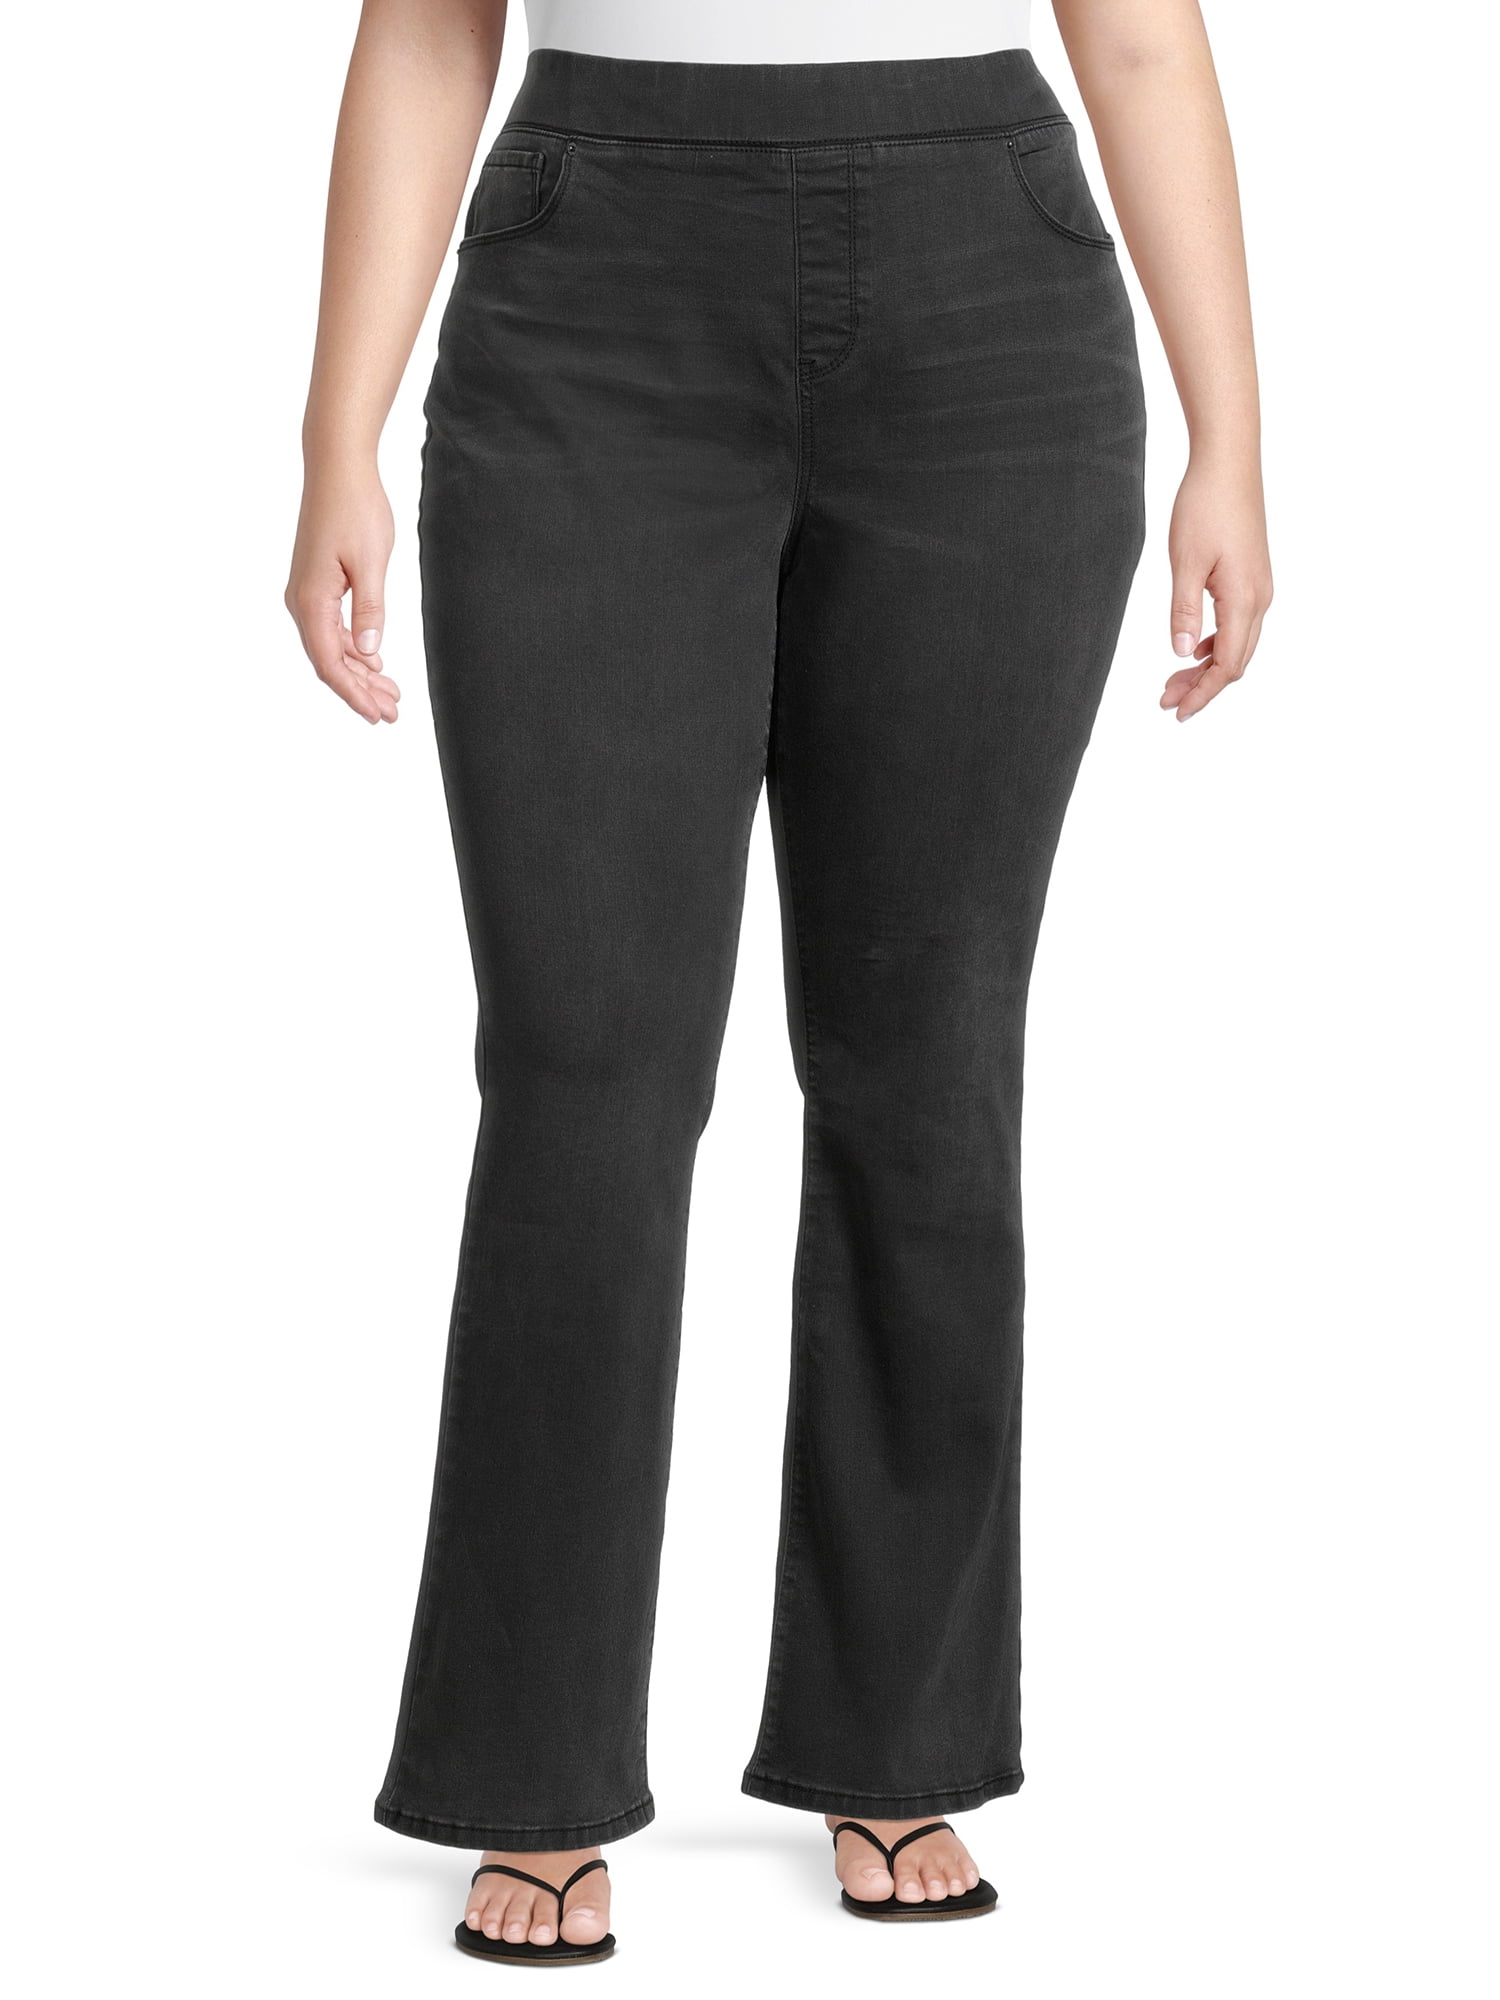 Terra & Sky Women's Plus Size Pull-On Bootcut Jeans 